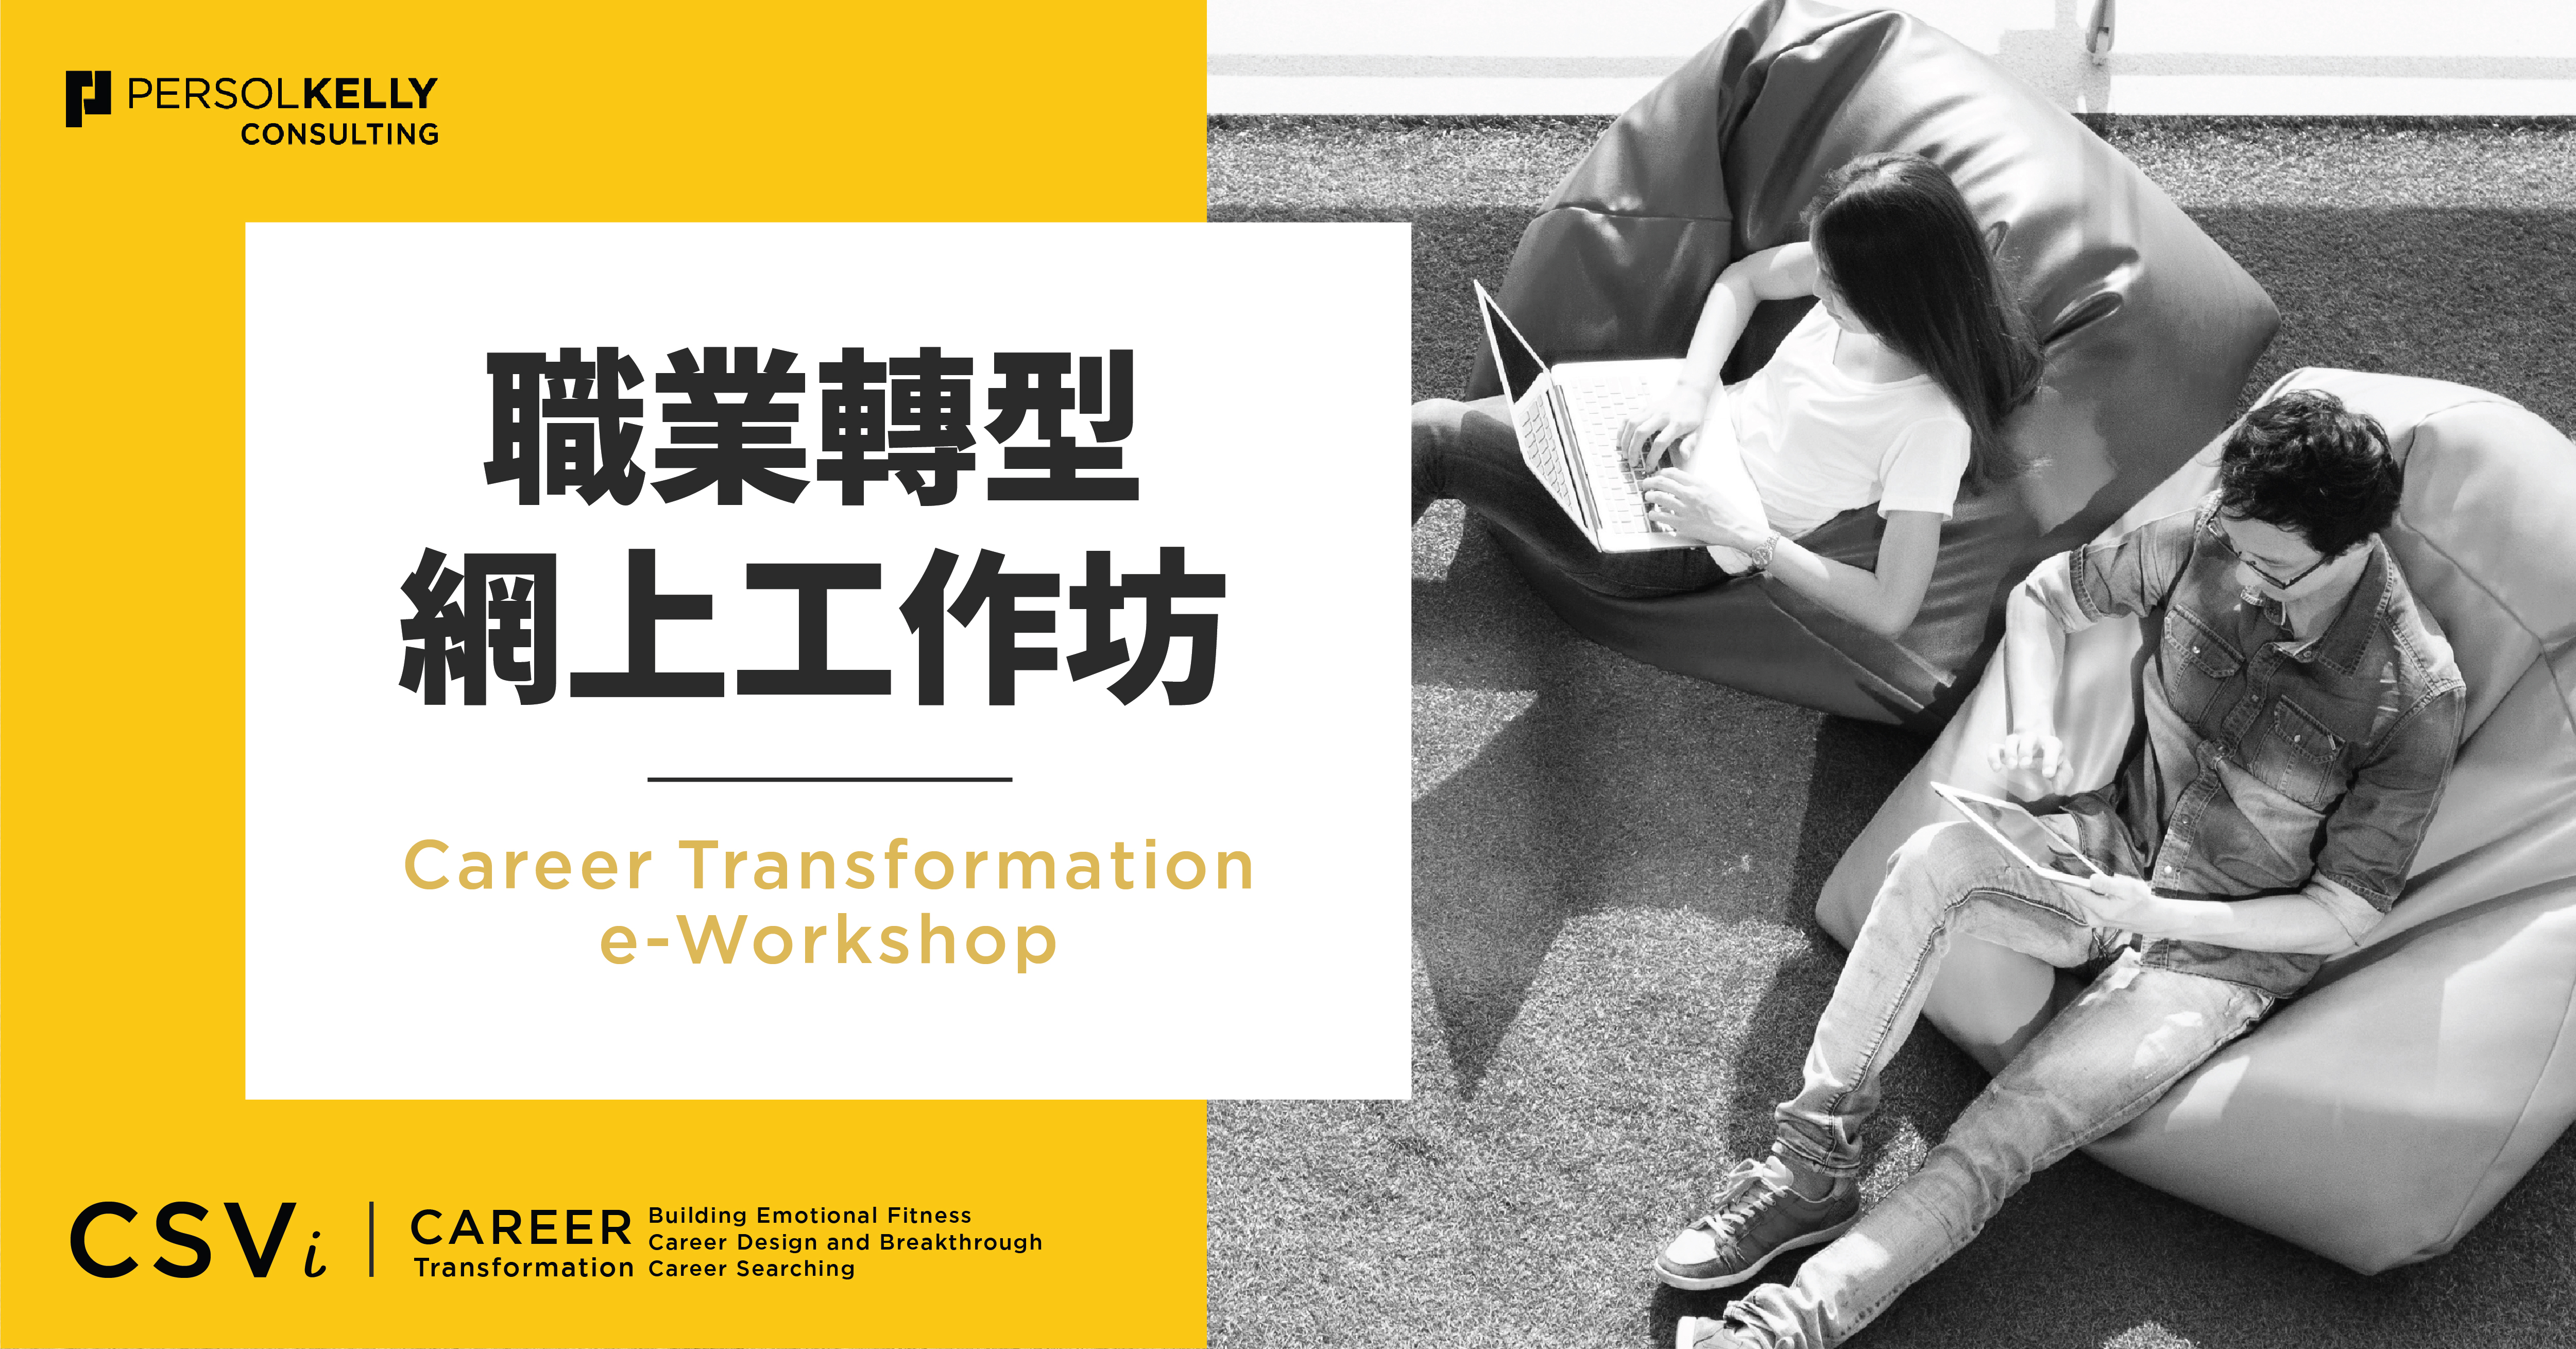 Career Transformation e-workshops